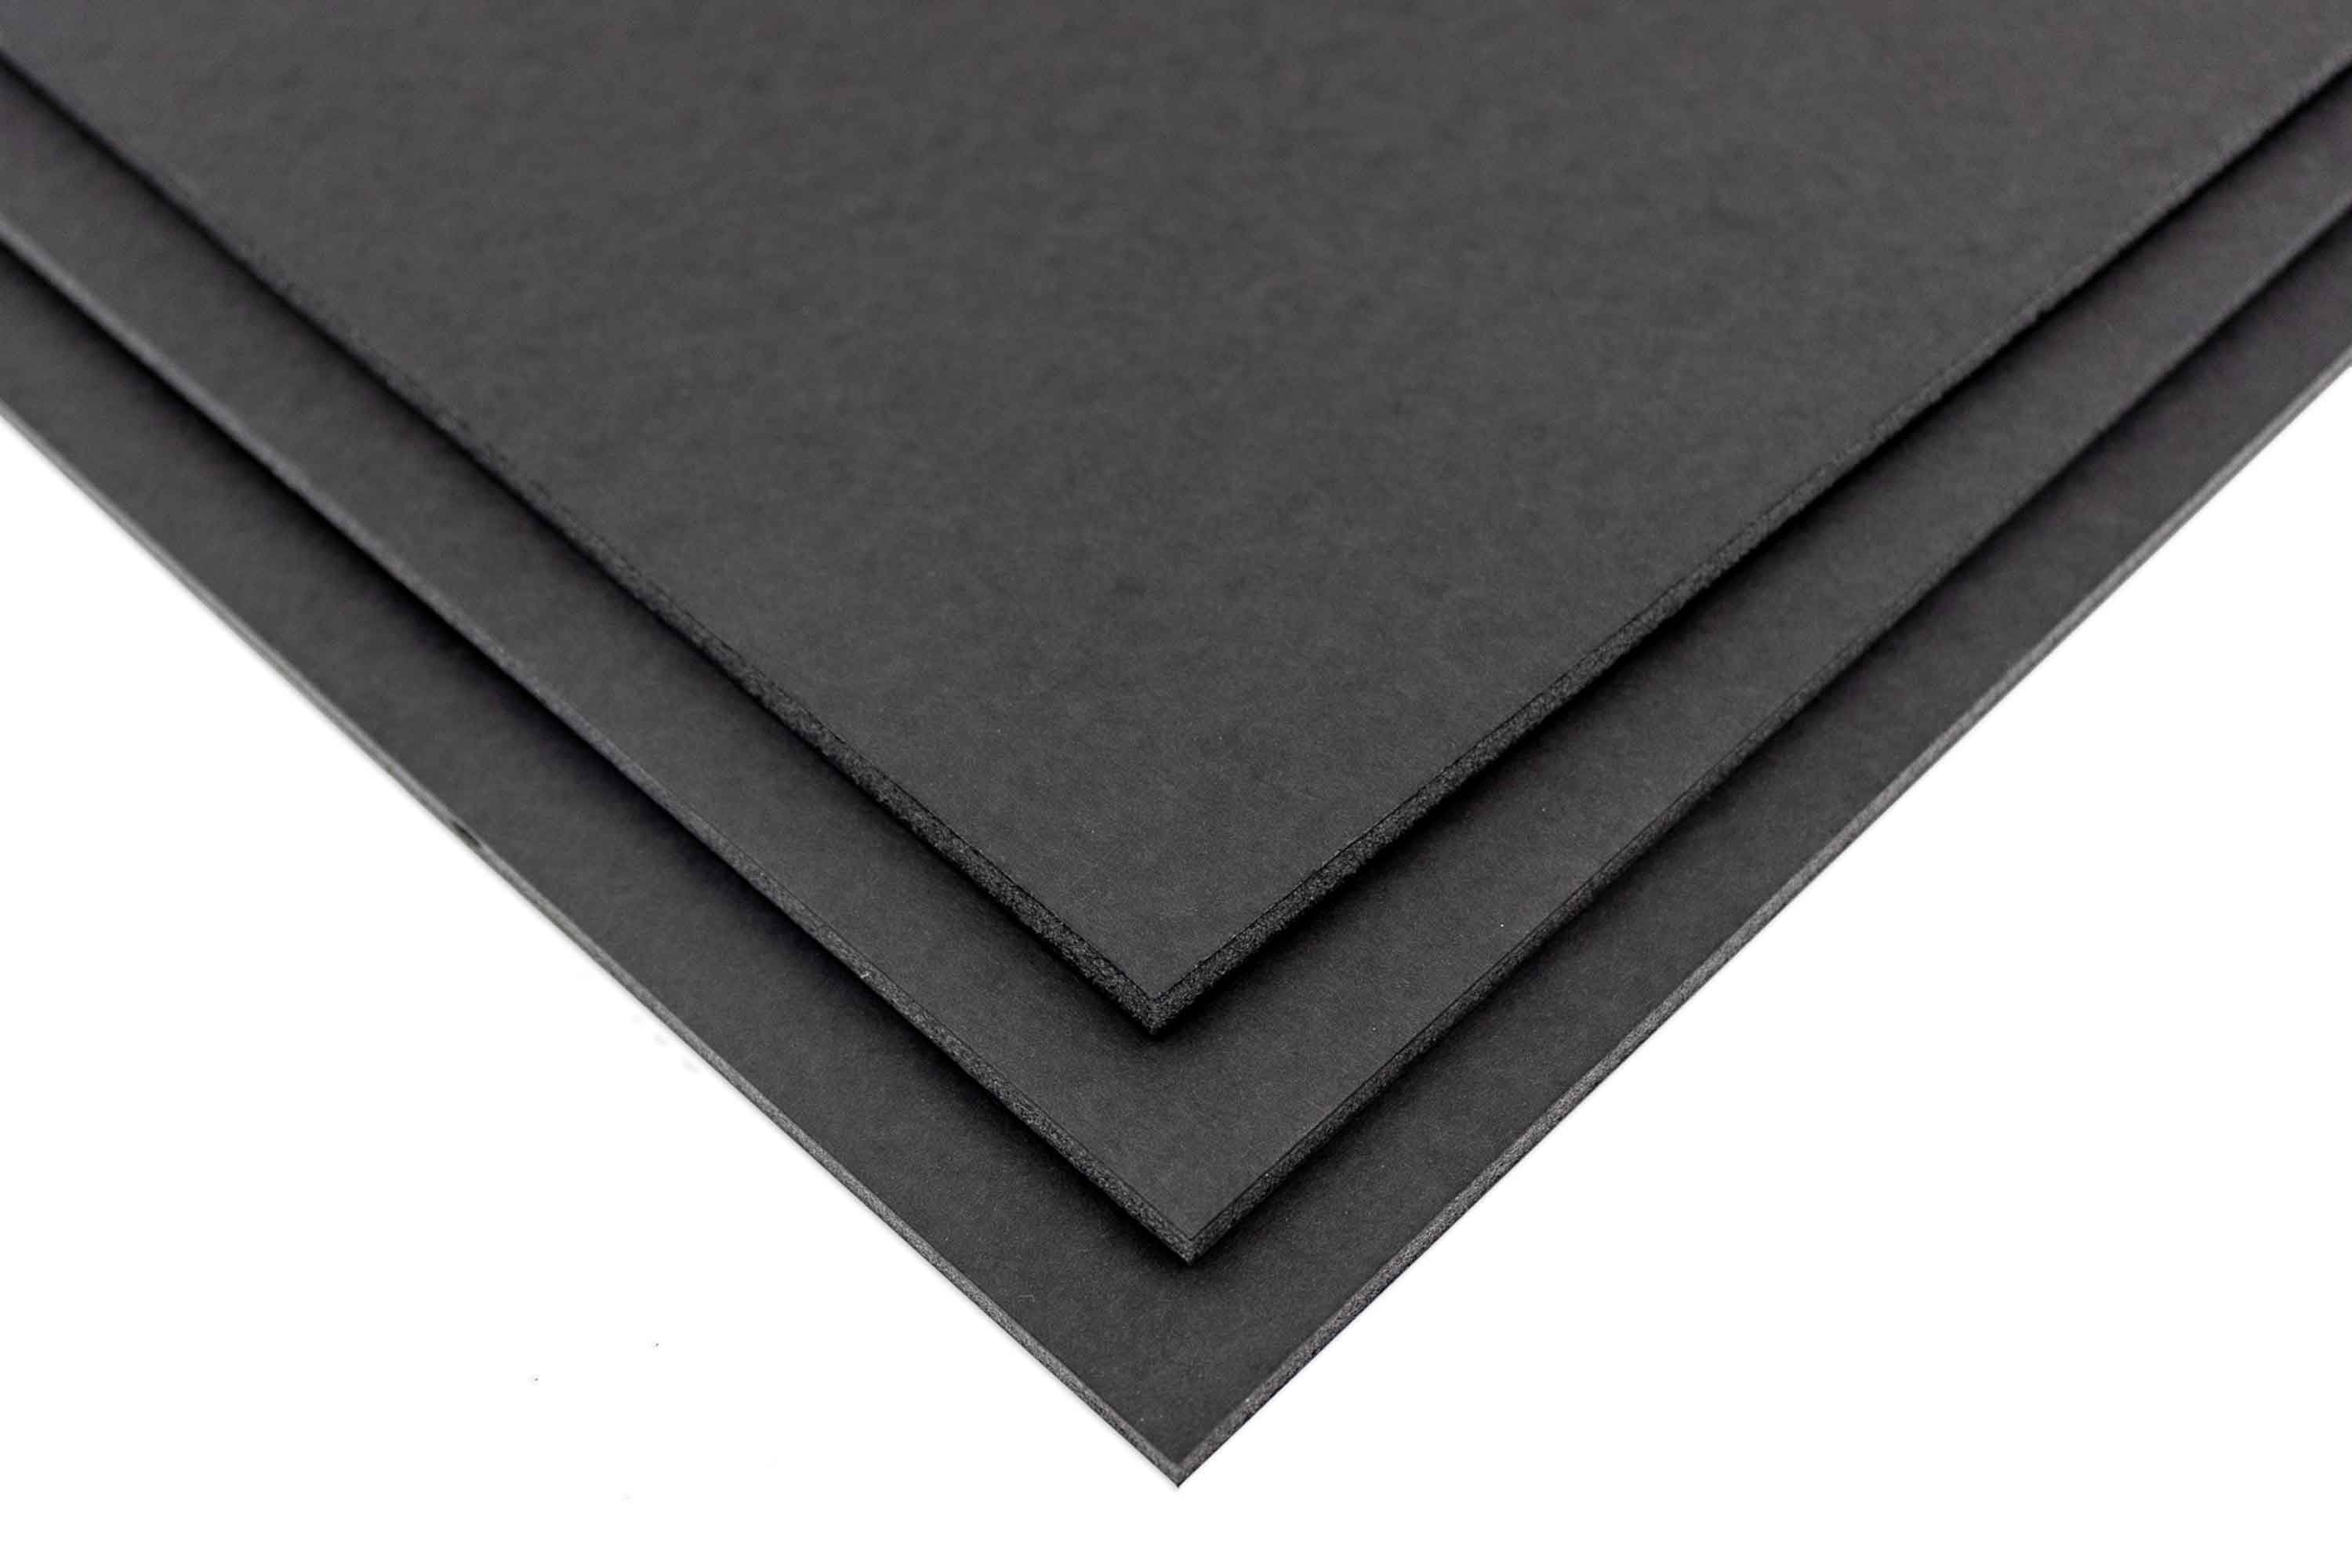  Excelsis Design 15 Pack Foam Board 24x36 Inches, Black Foam  Board 3/16 Inch Thick Black Core Mat